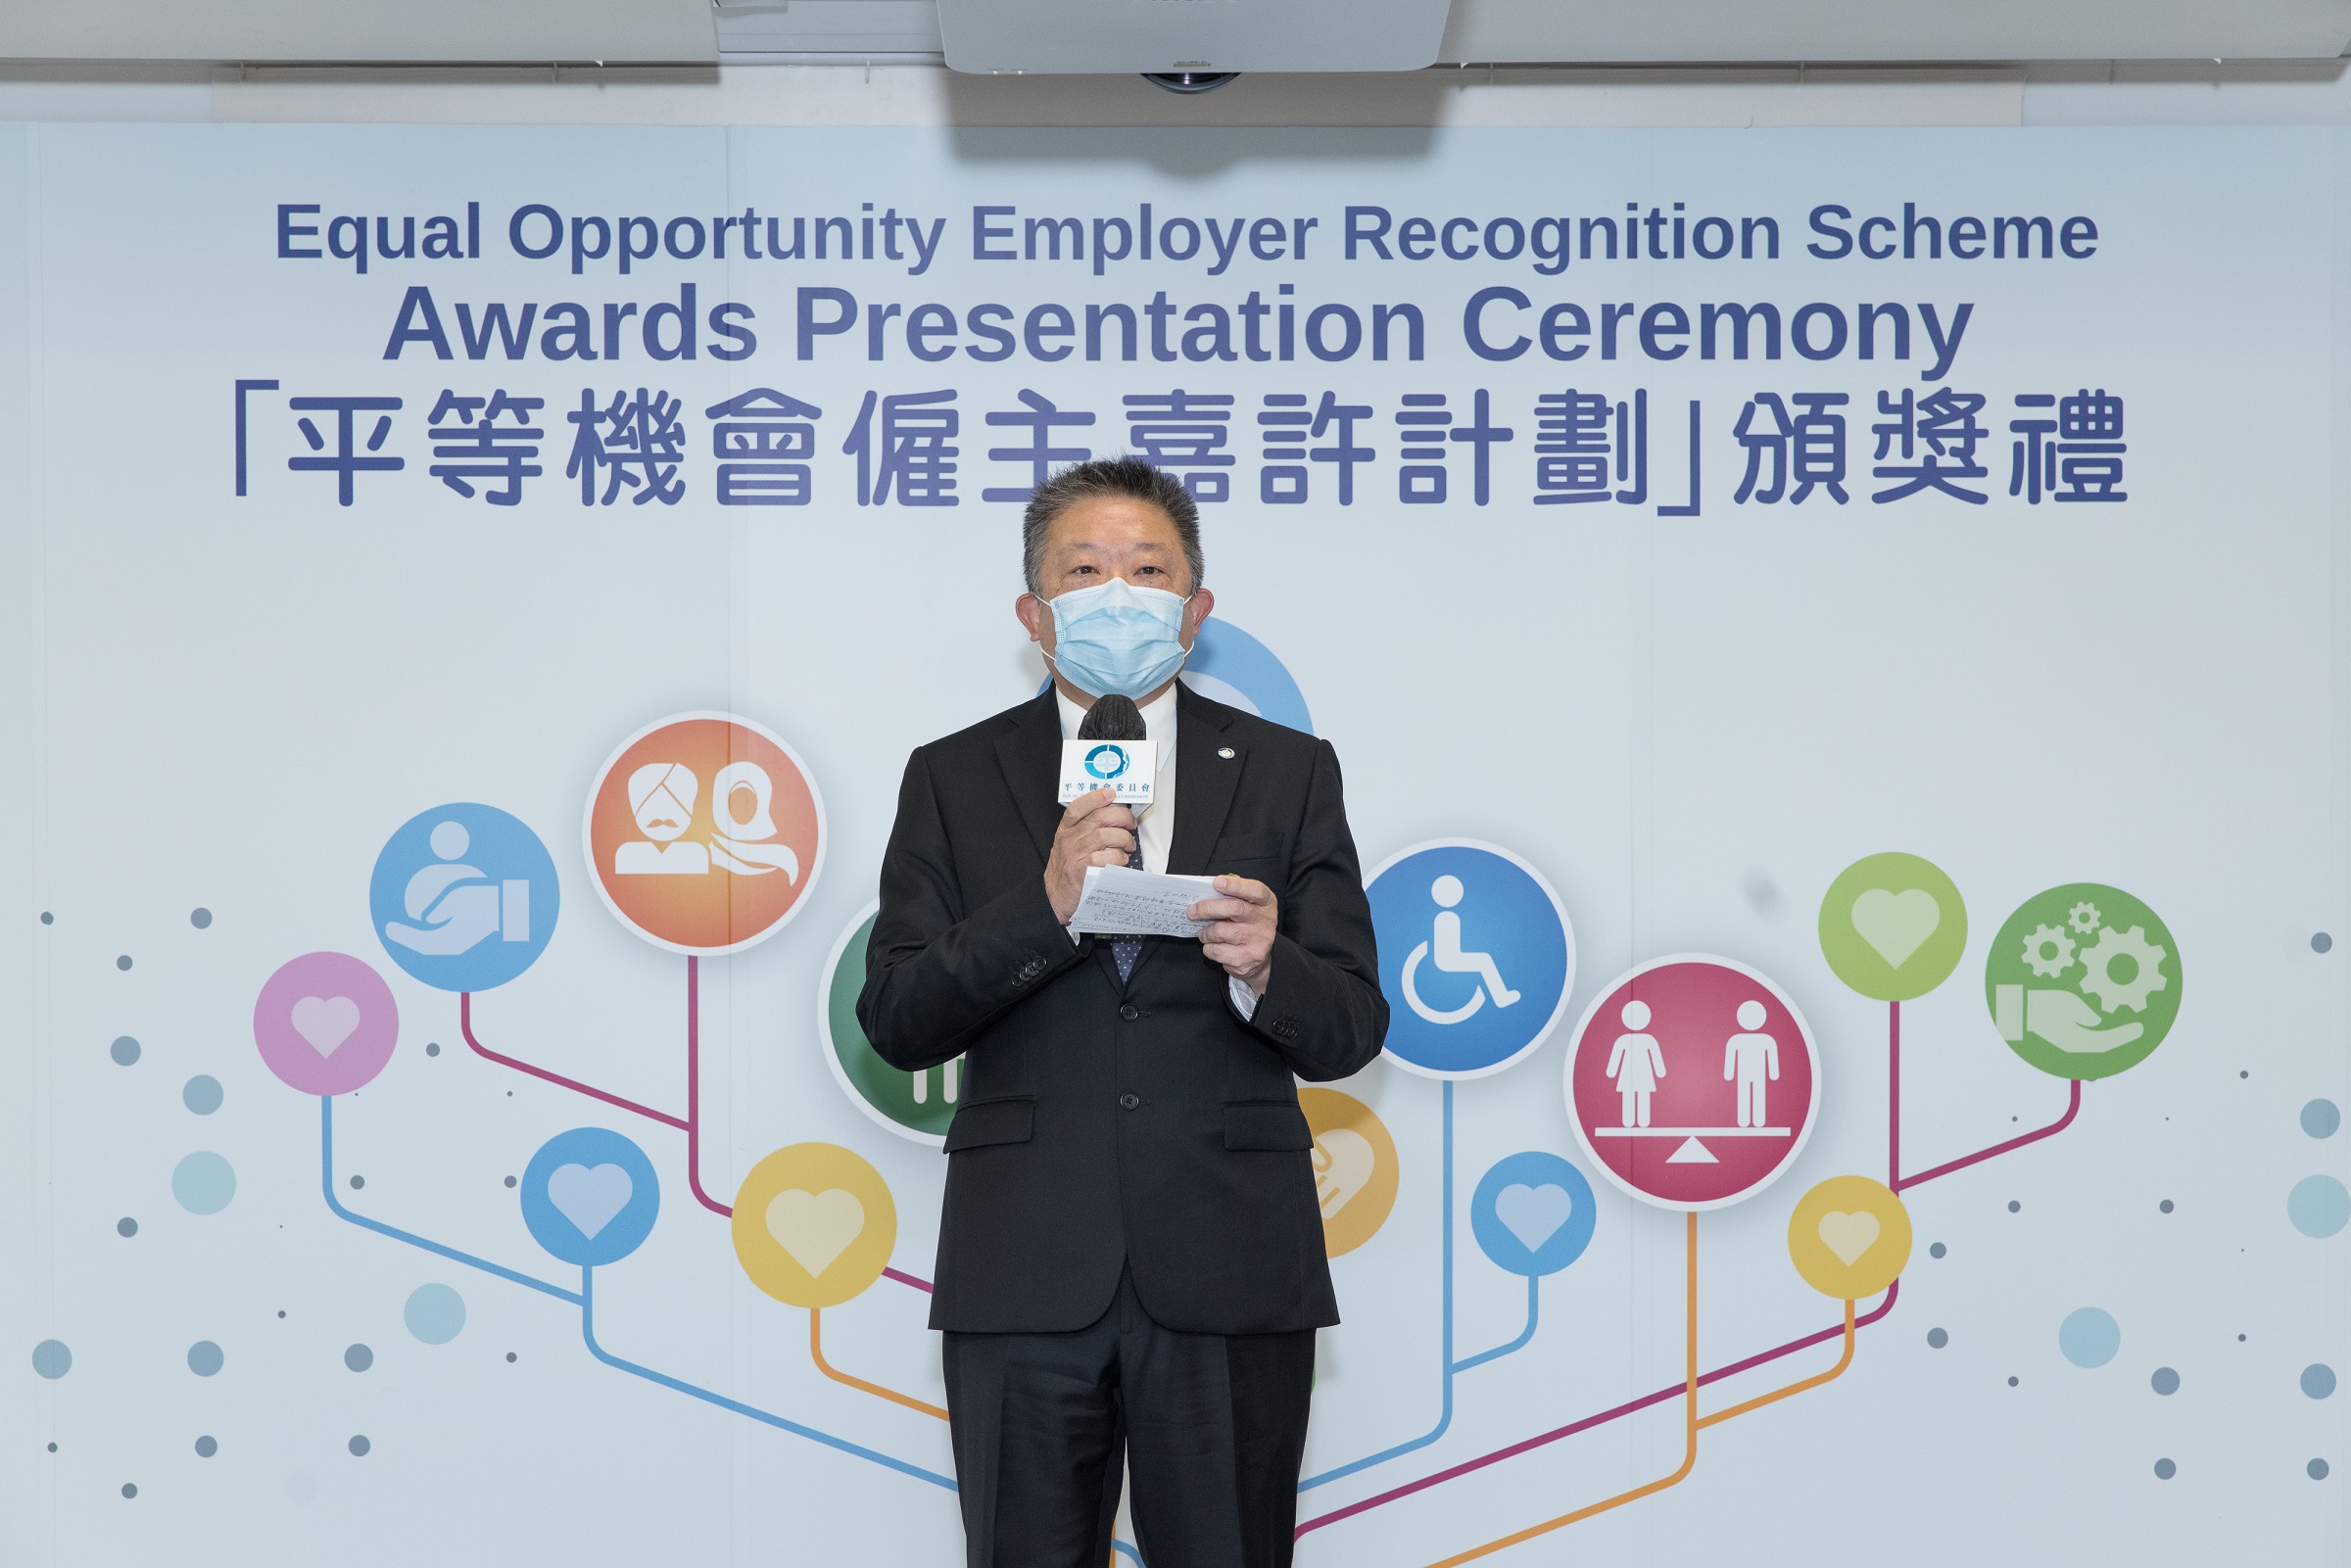 平機會主席朱敏健先生於平等機會僱主嘉許計劃頒獎典禮上講話的照片。